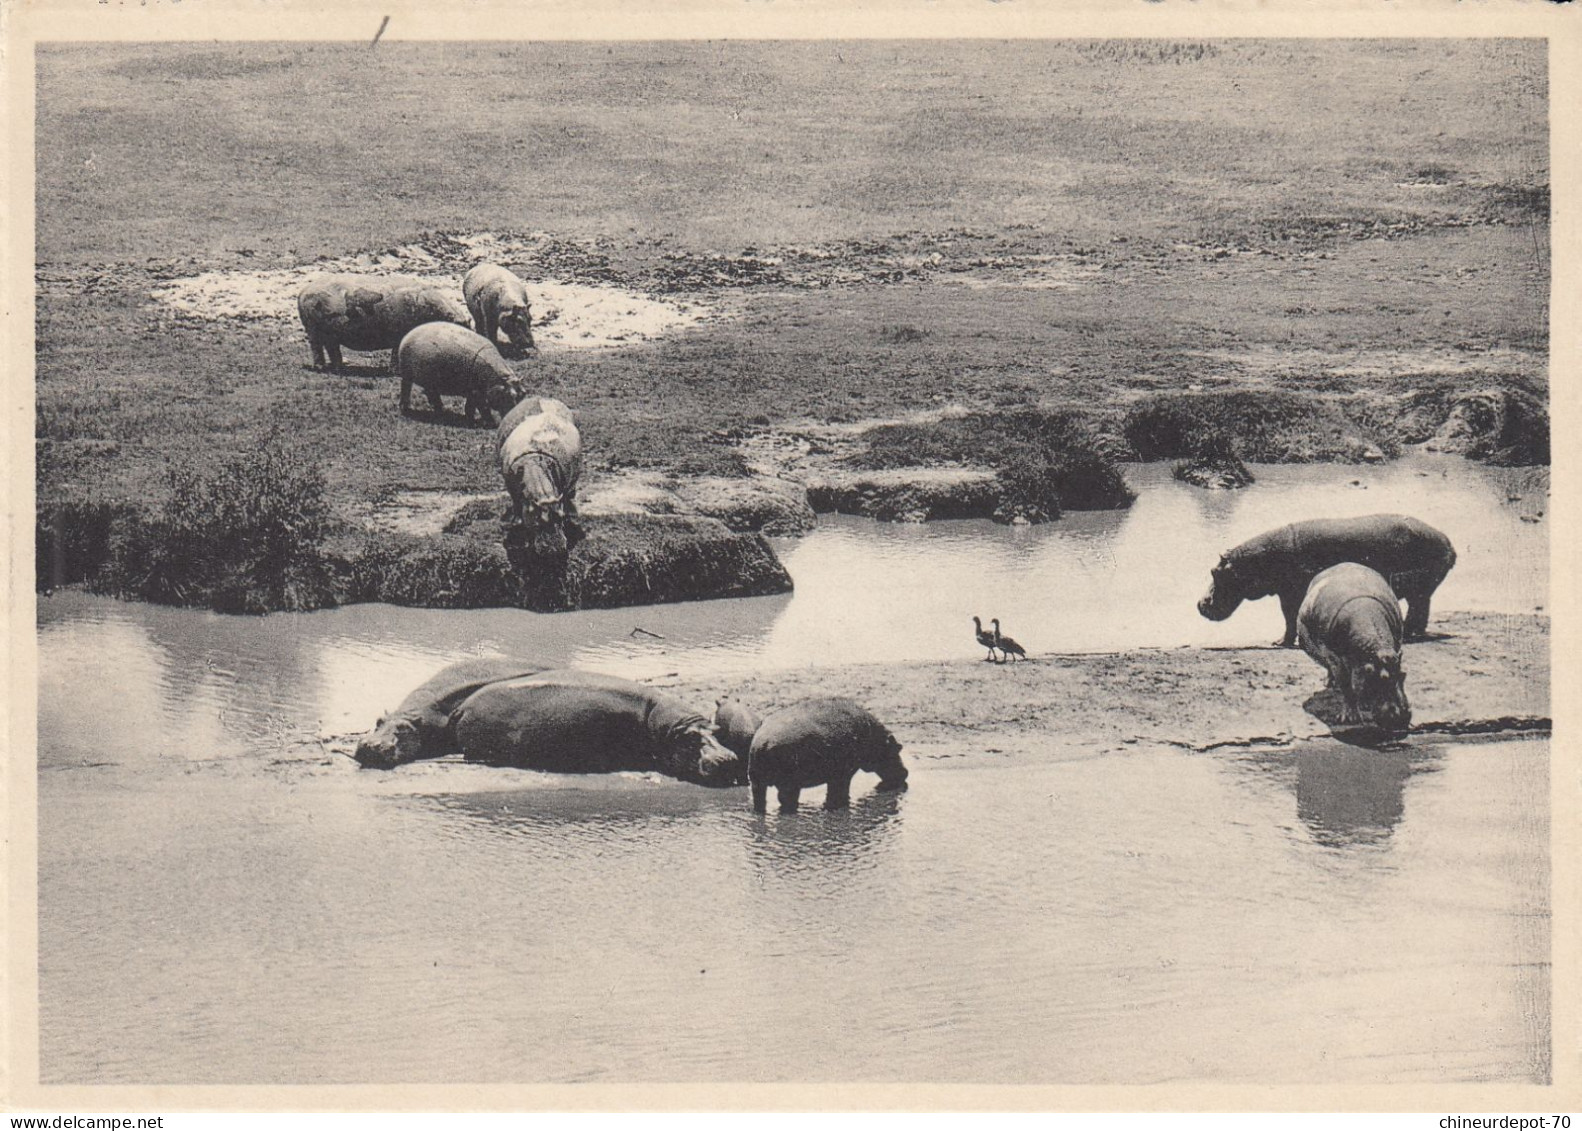 HIPPOPOTAMES ET OIES D EGYPTE  PLAINE DU LAC  EDOUARD  CONGO BELGE - Hippopotames